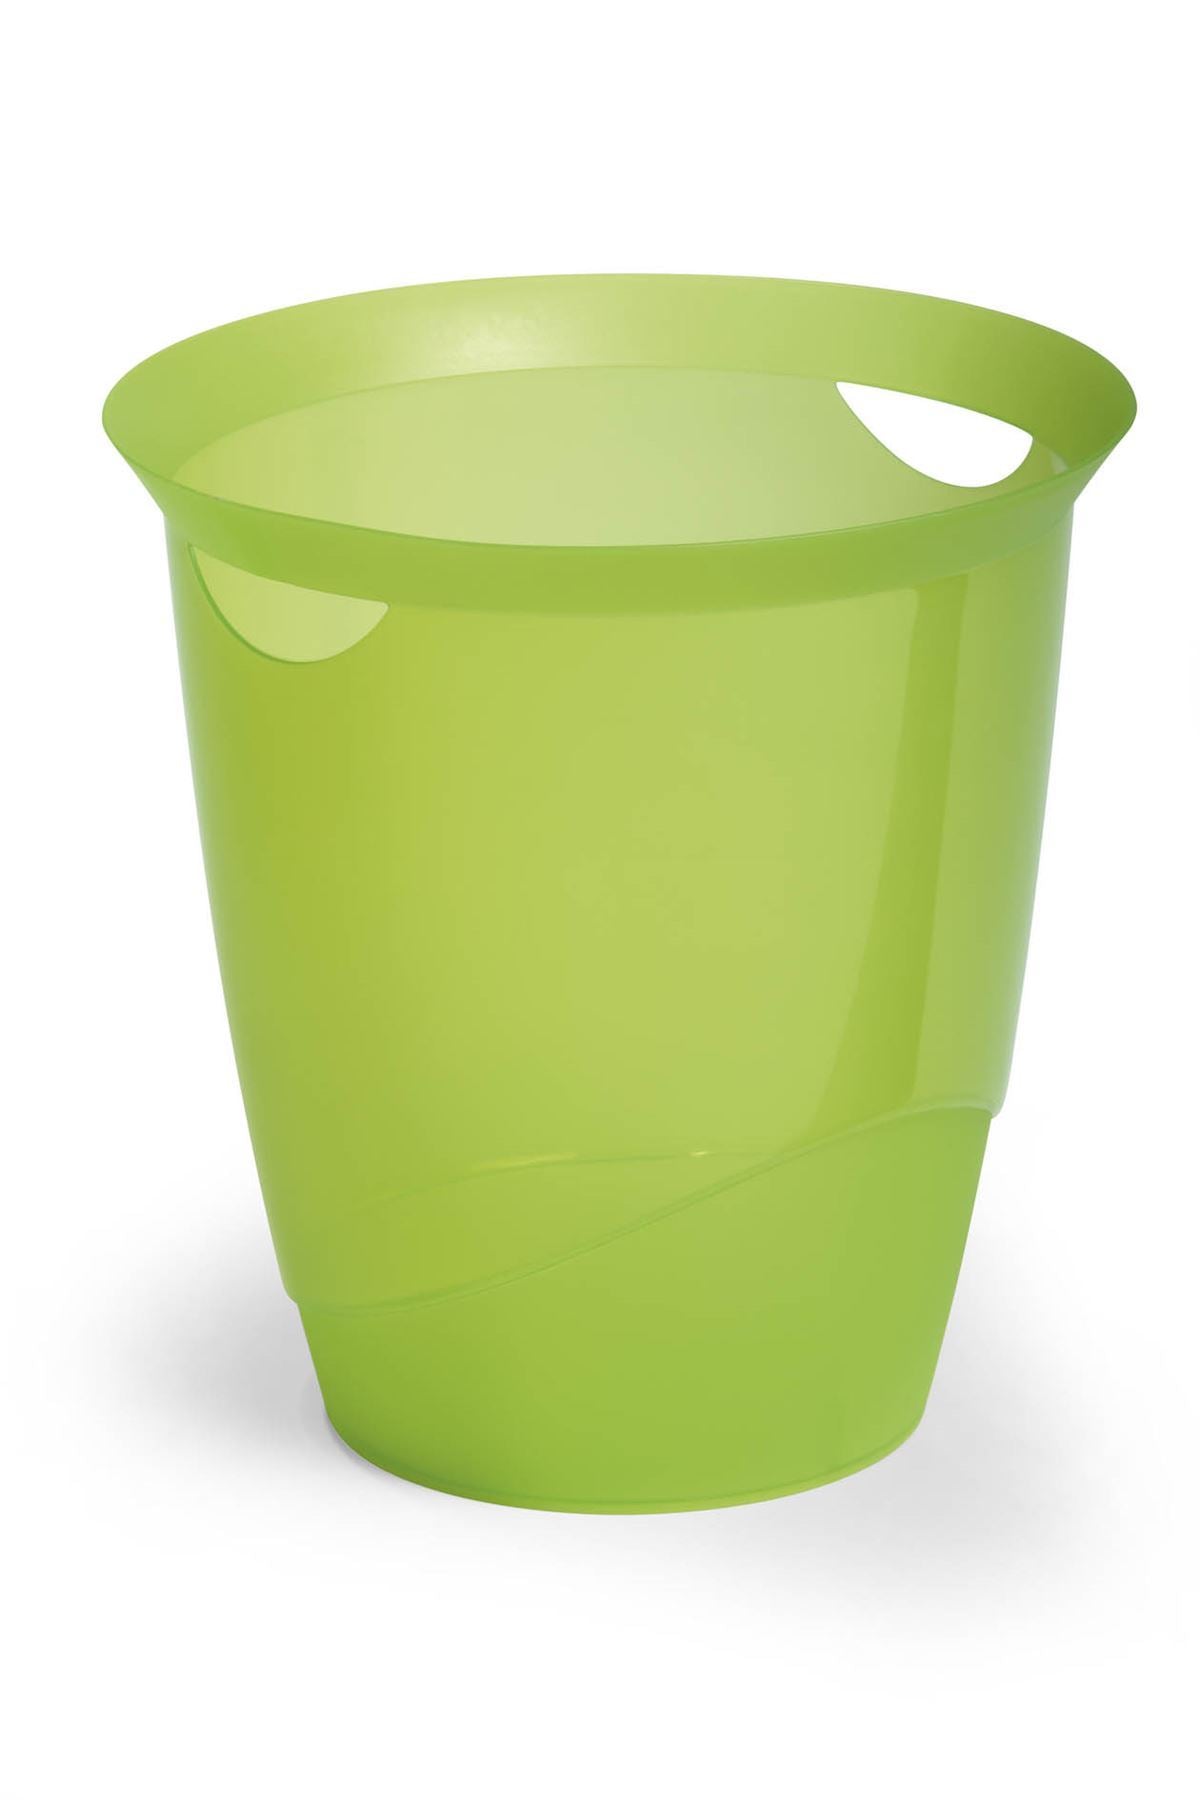 Durable Plastic Waste Bin | Pack of 6 | 16 Litre | Light Green